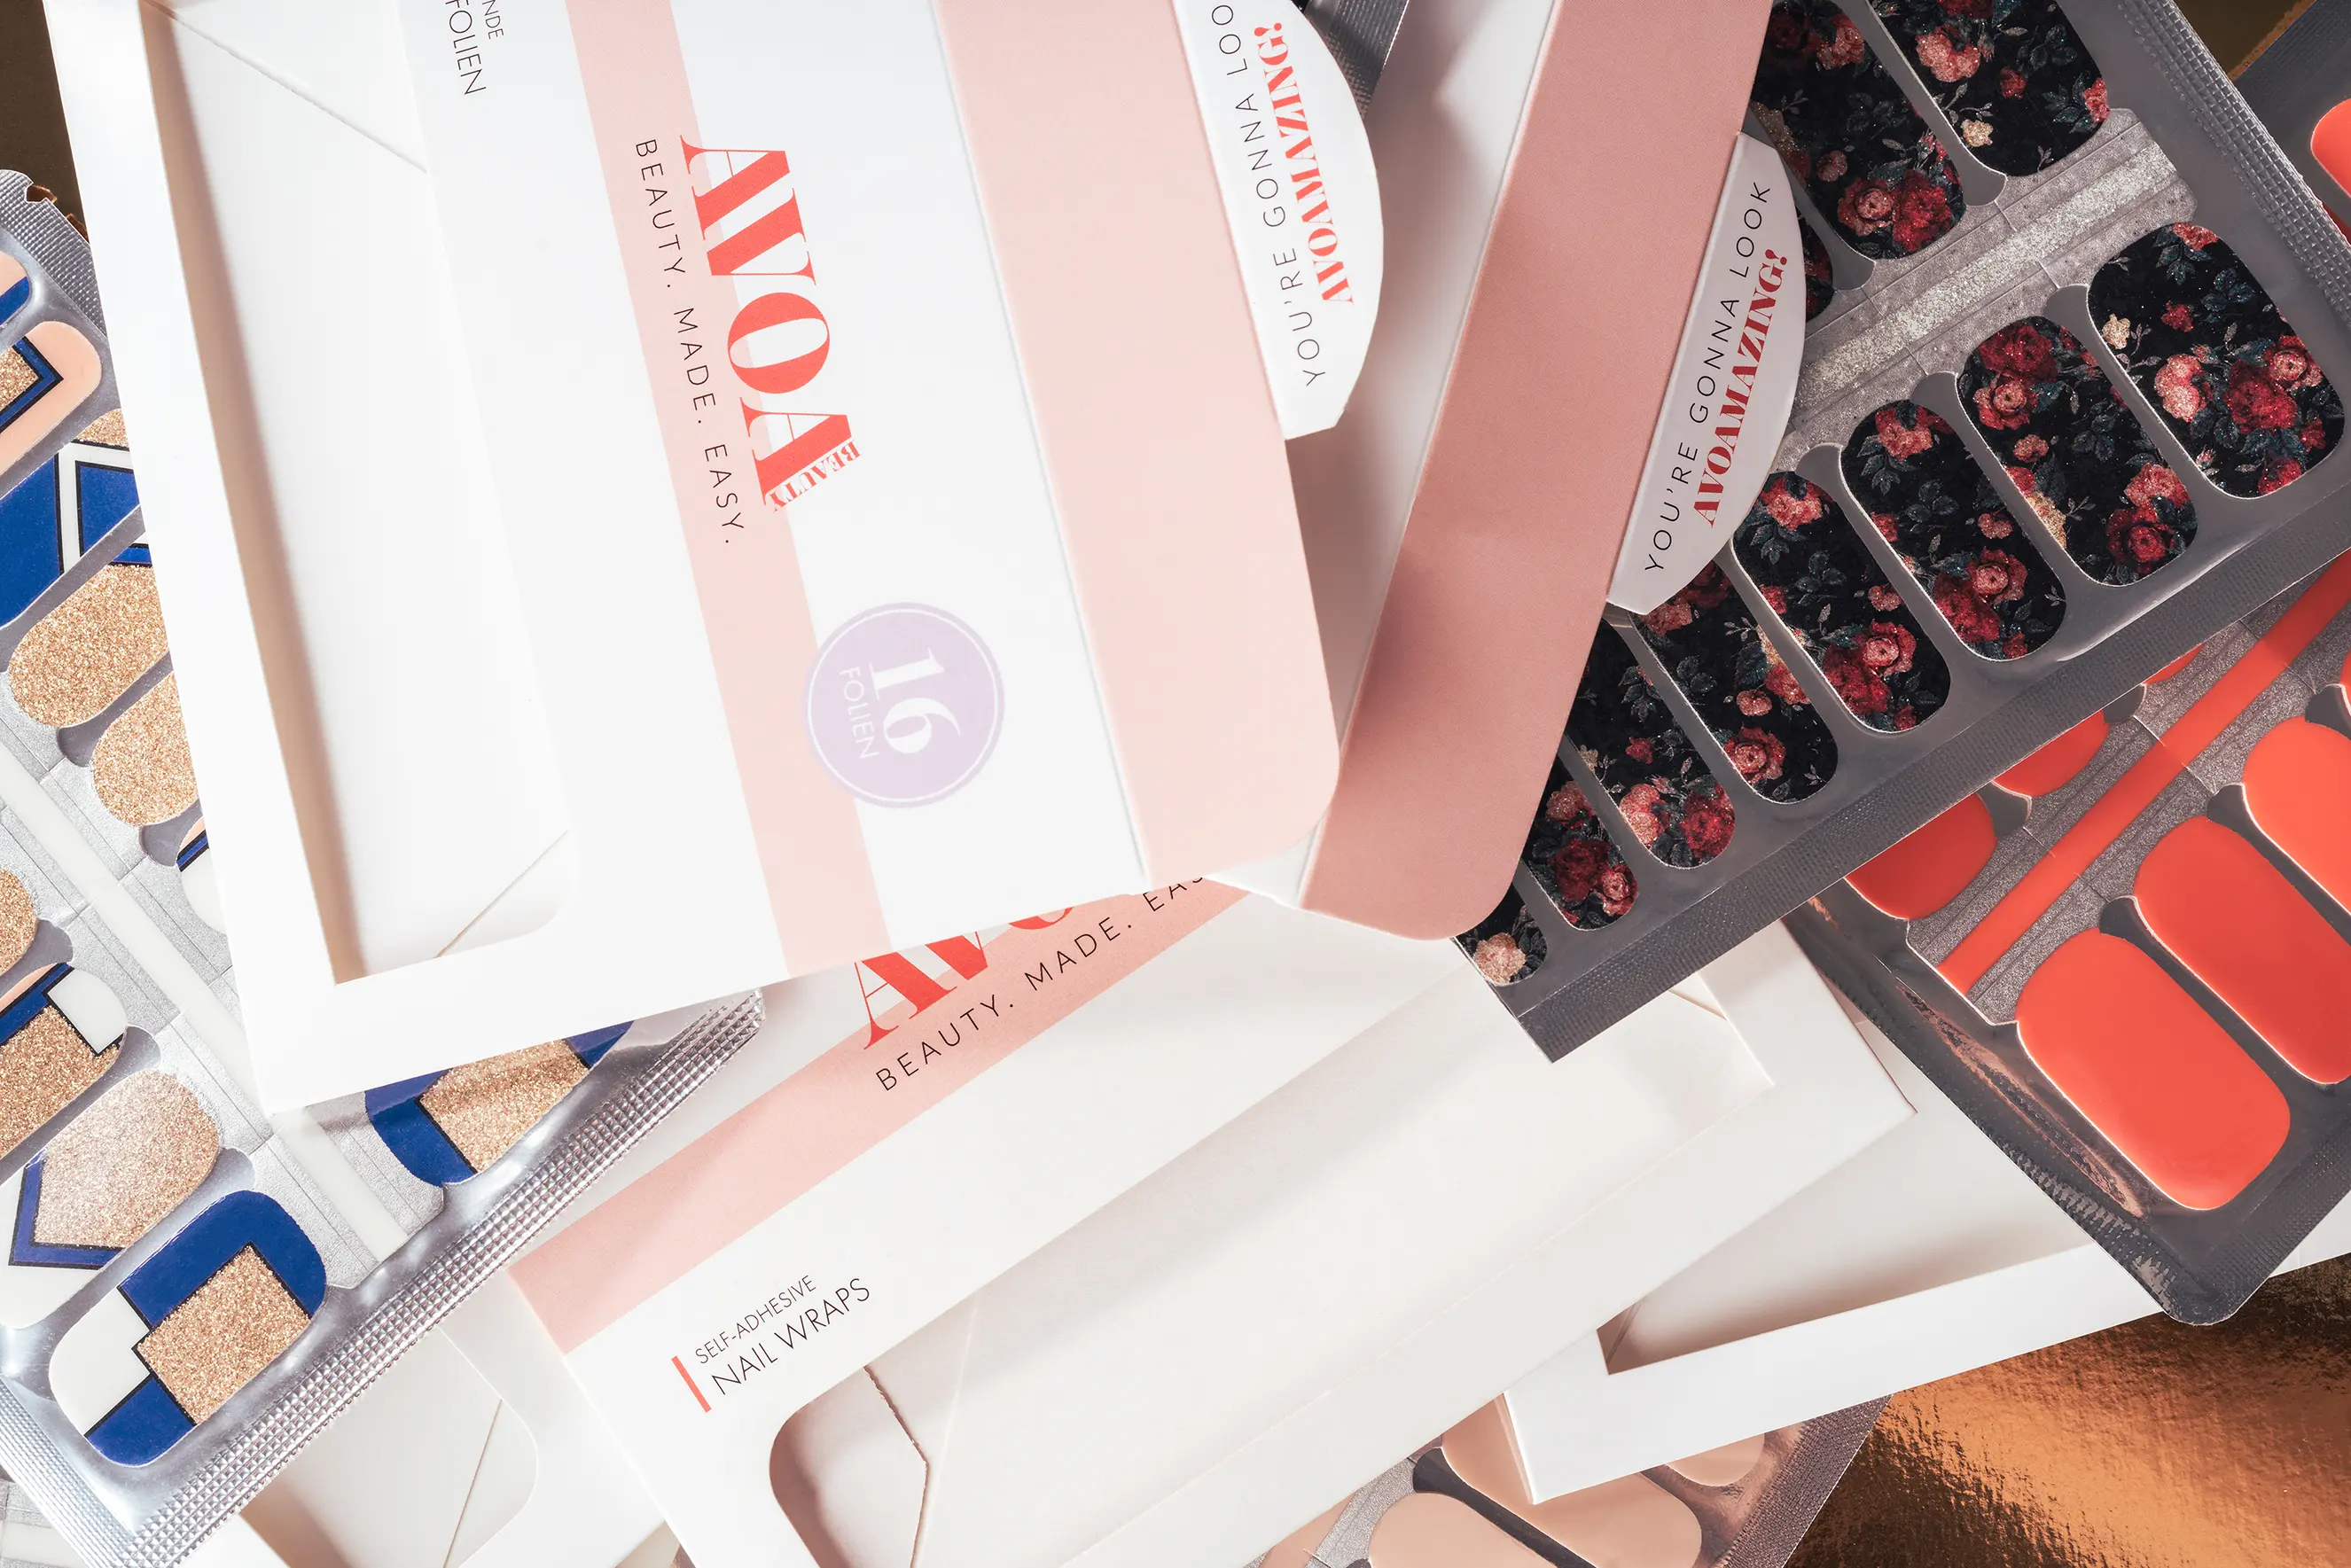 Verpackung nach Maß hergestellt vom Onlineshop die-verpackungs-druckerei für die Marke Avoa Beauty